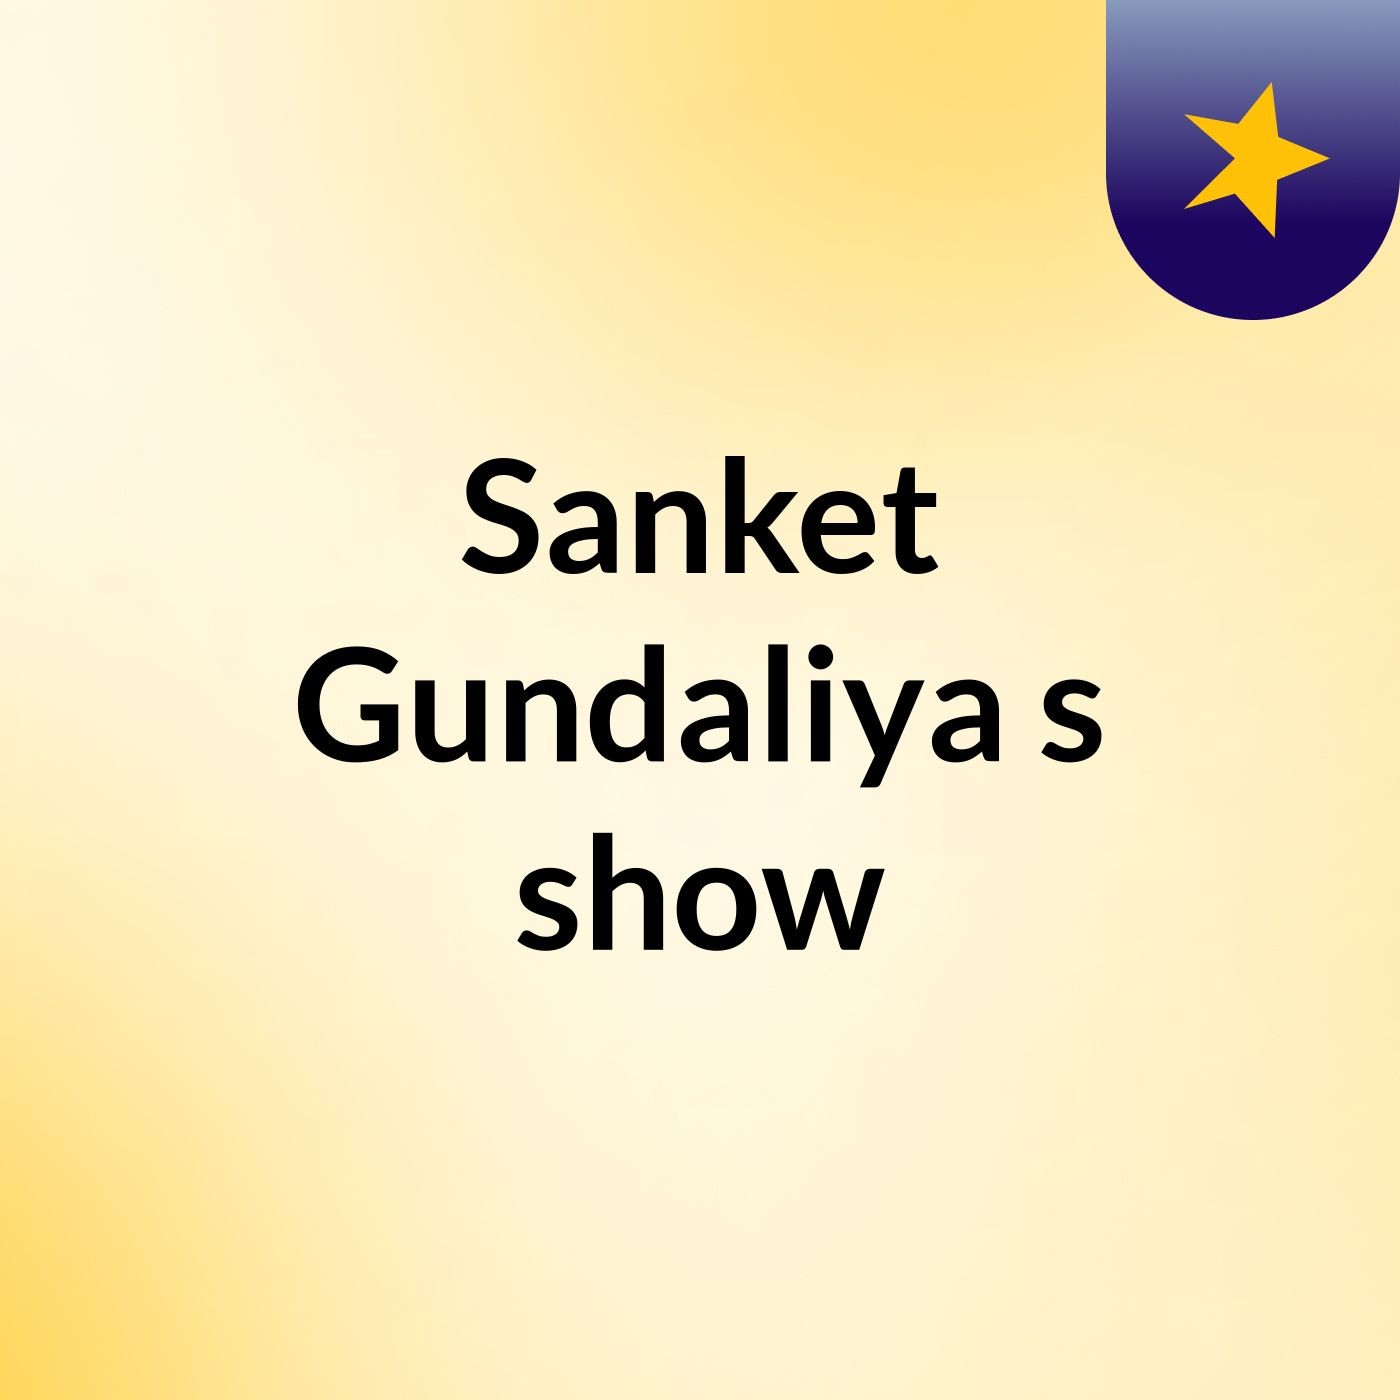 Sanket Gundaliya's show